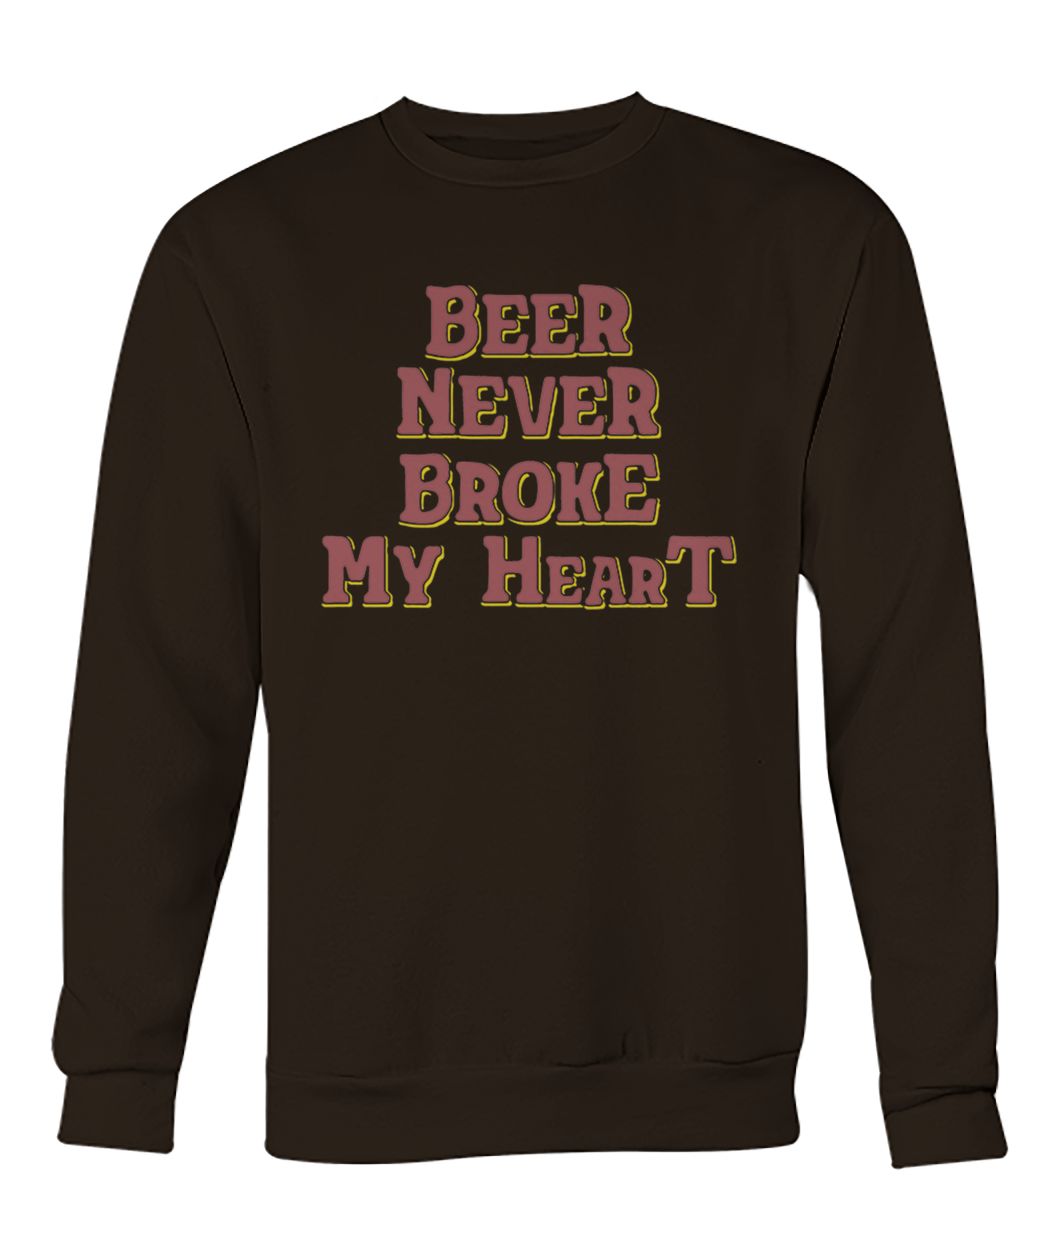 Beer never broke my heart crew neck sweatshirt